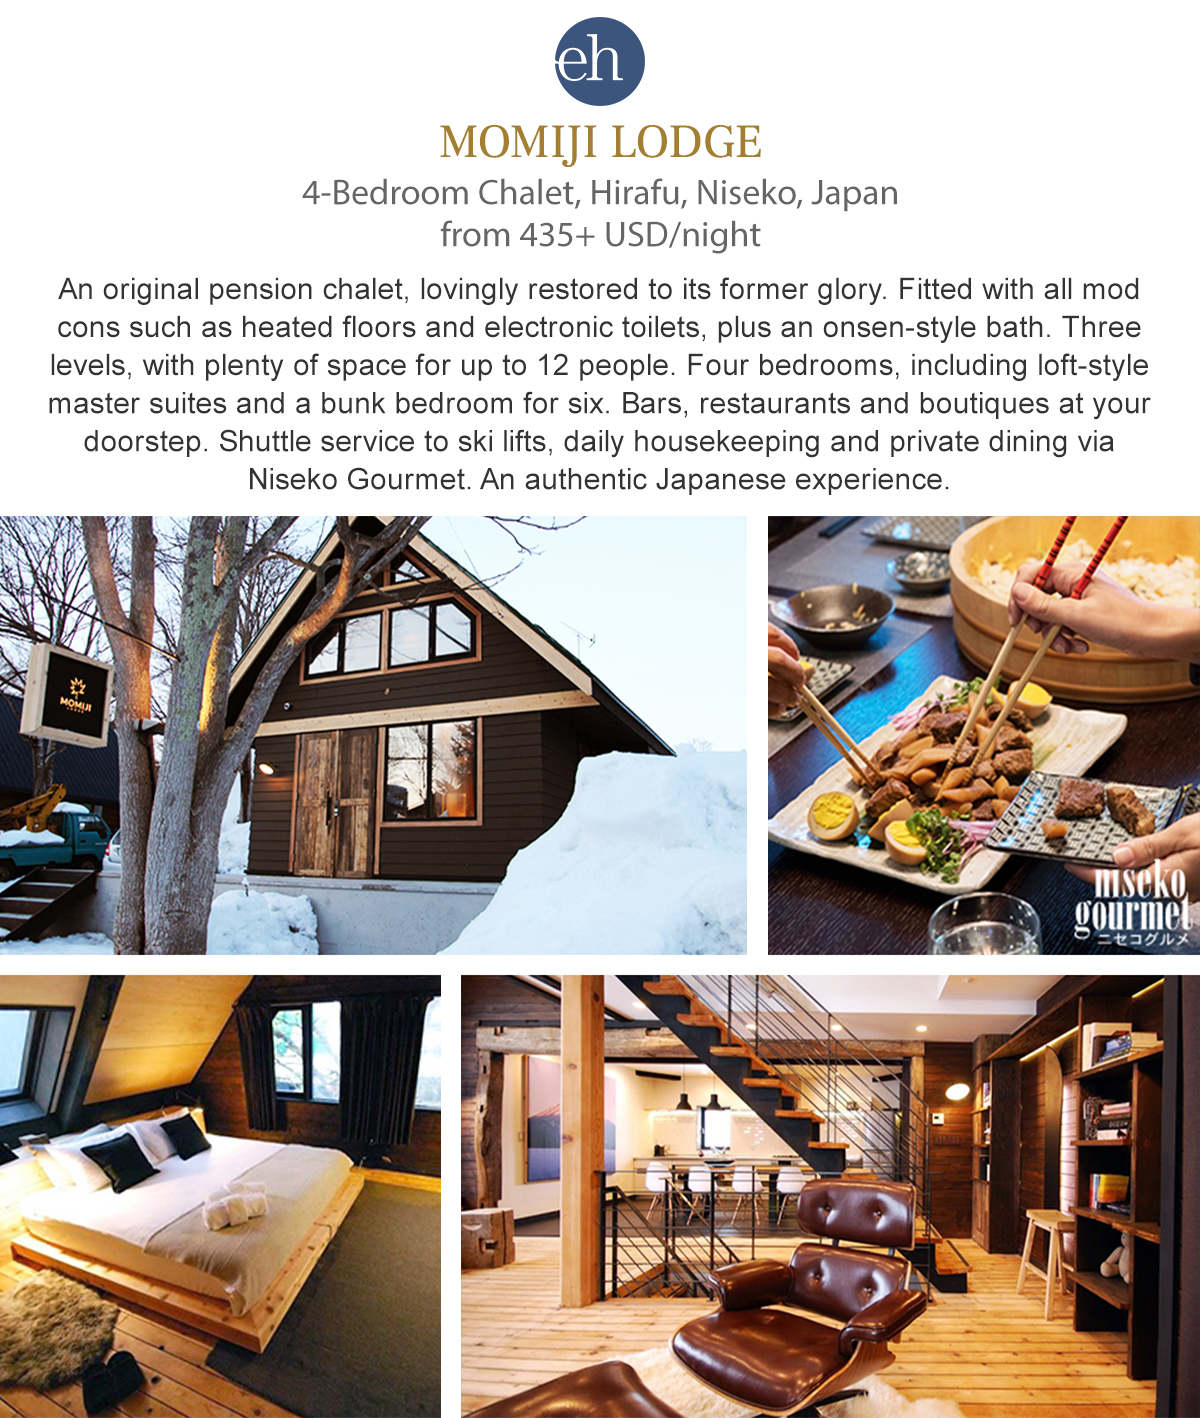 Momiji Lodge - Niseko, Japan